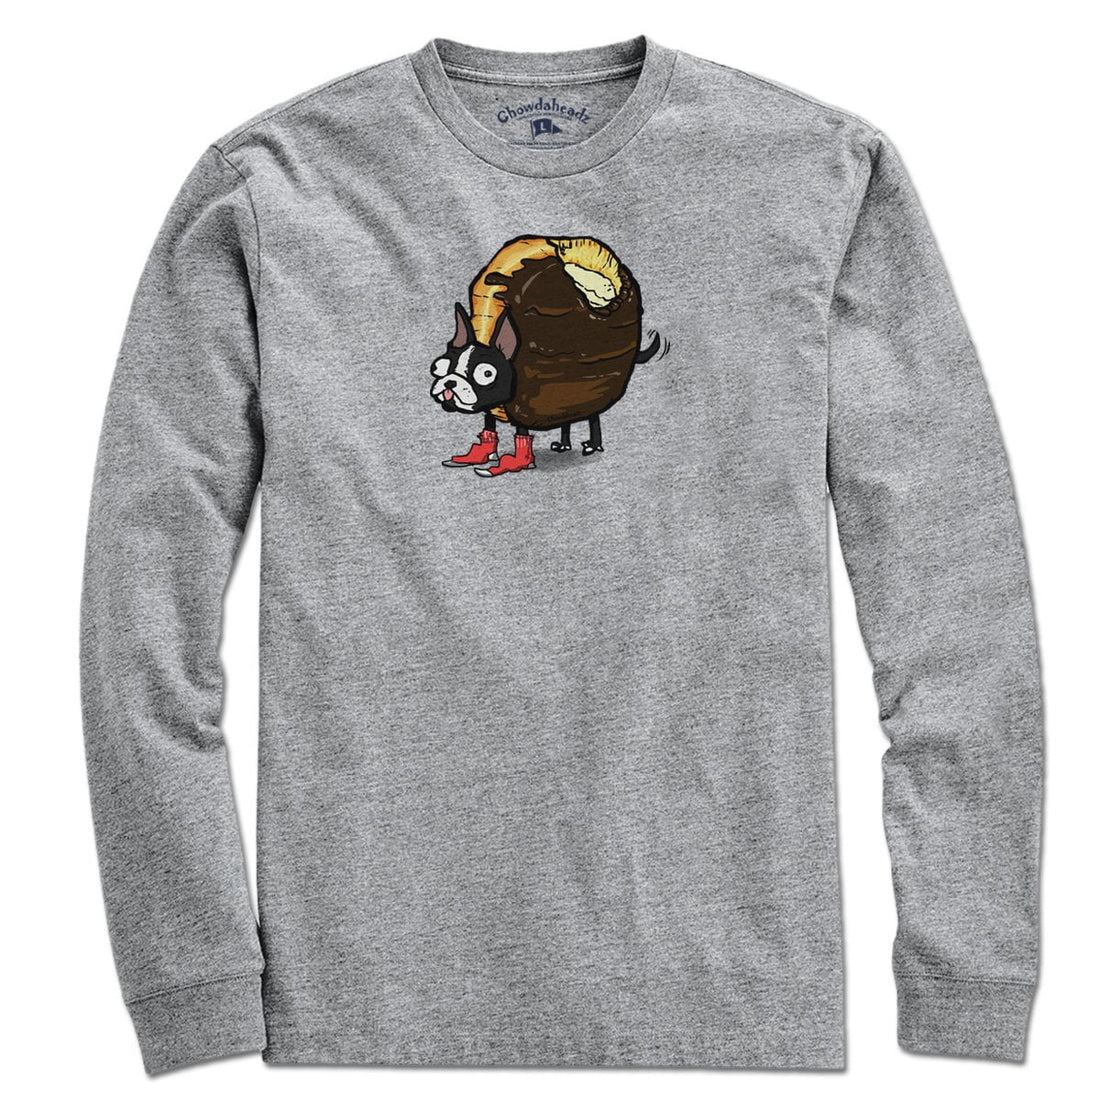 Boston Cream Terrier T-Shirt - Chowdaheadz